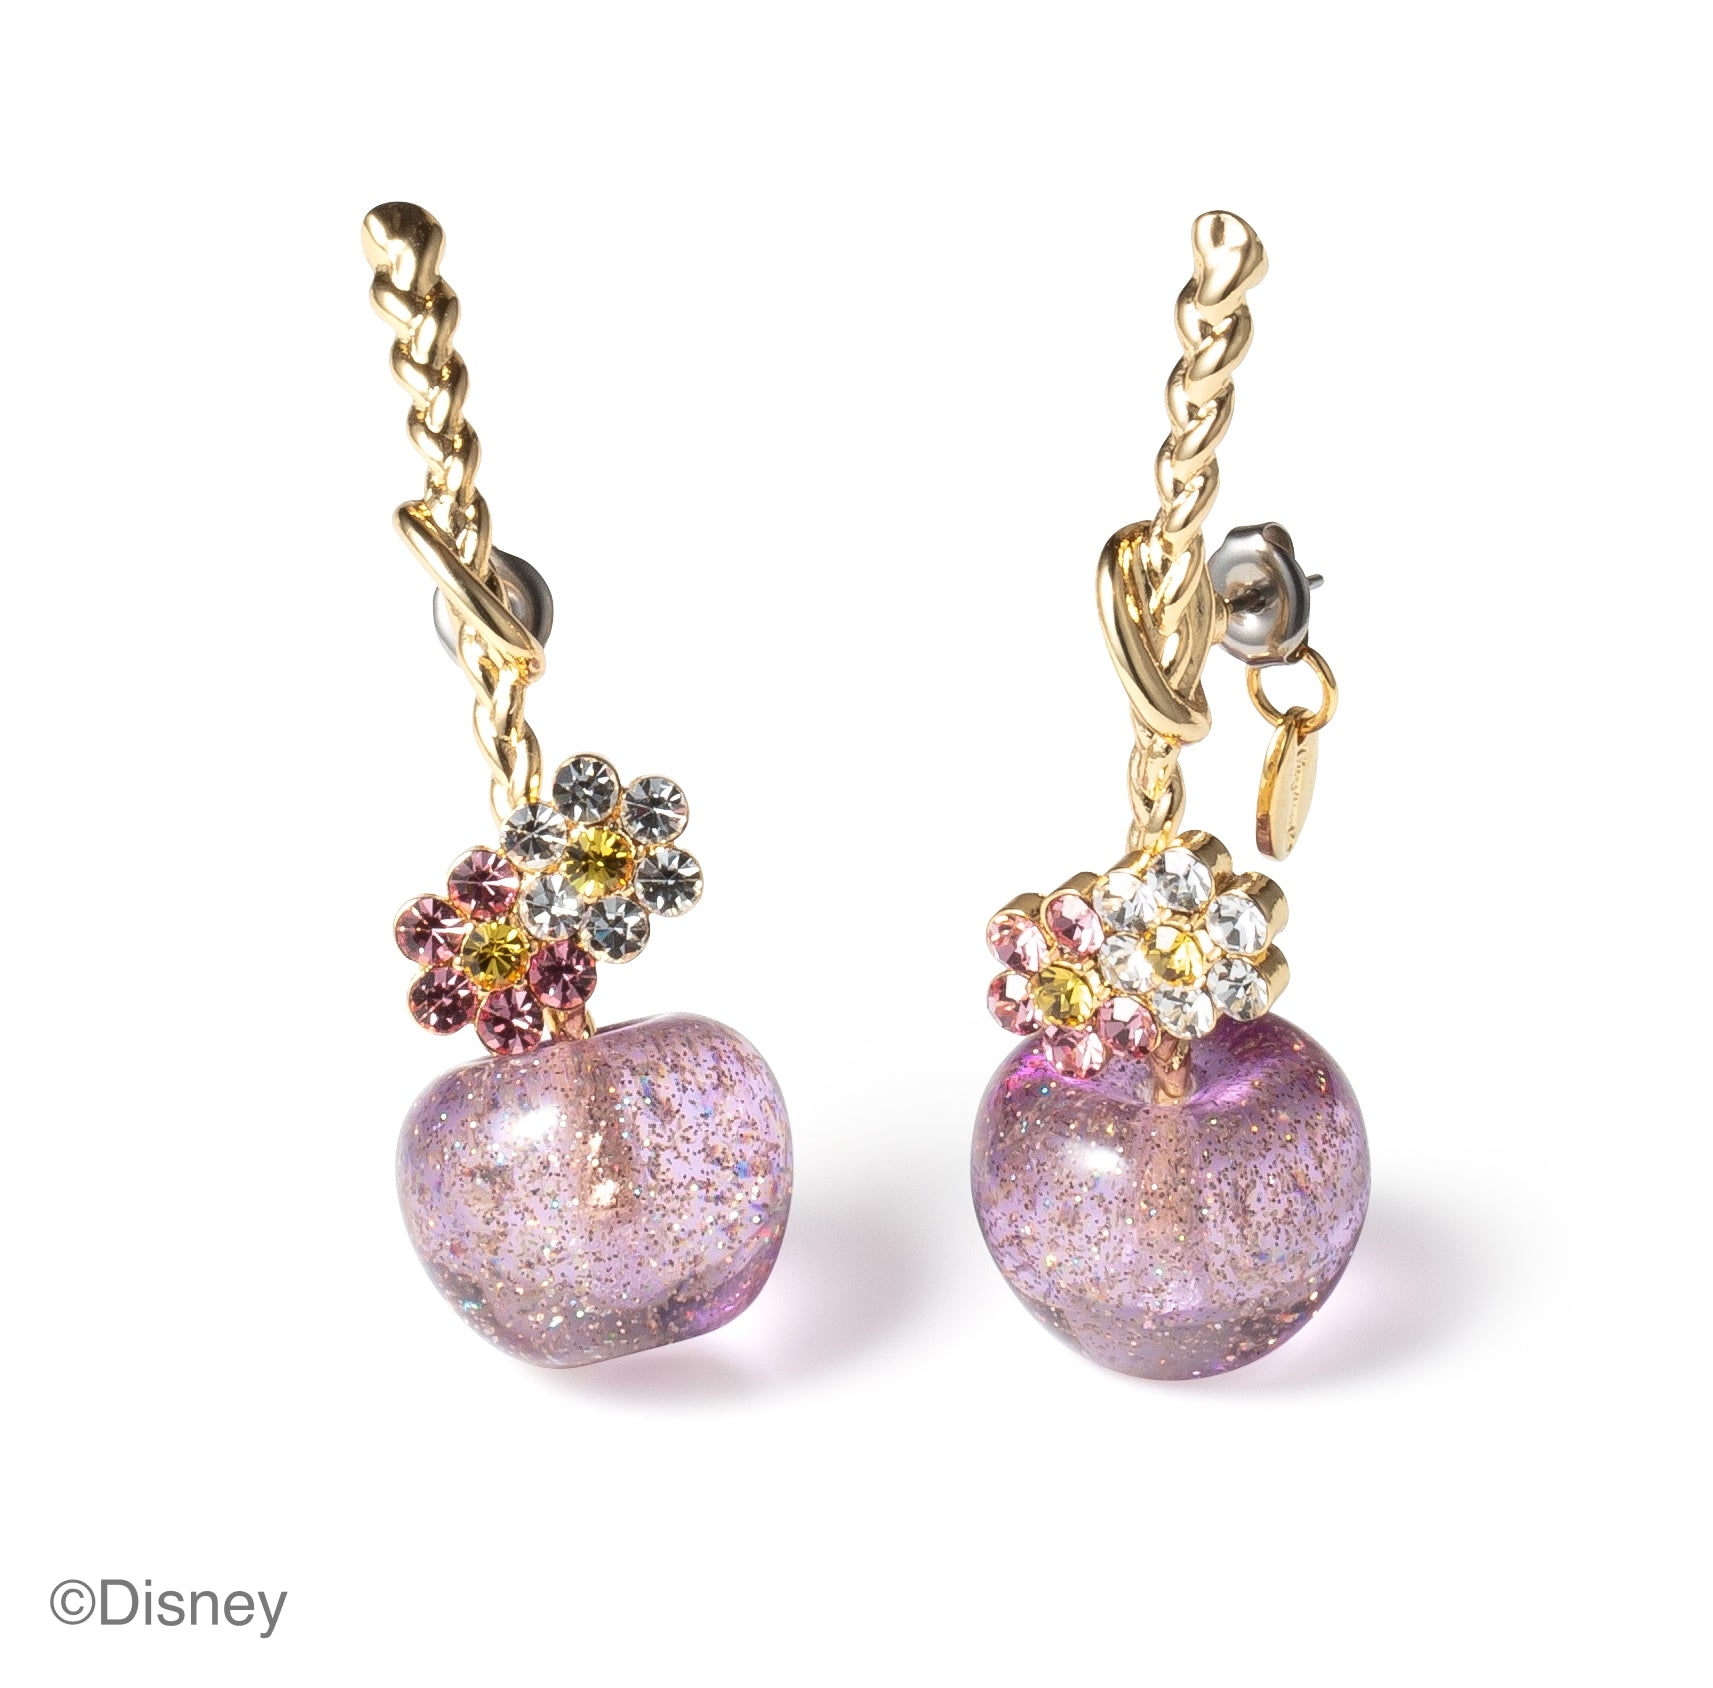 [Rapunzel] Cherry earrings